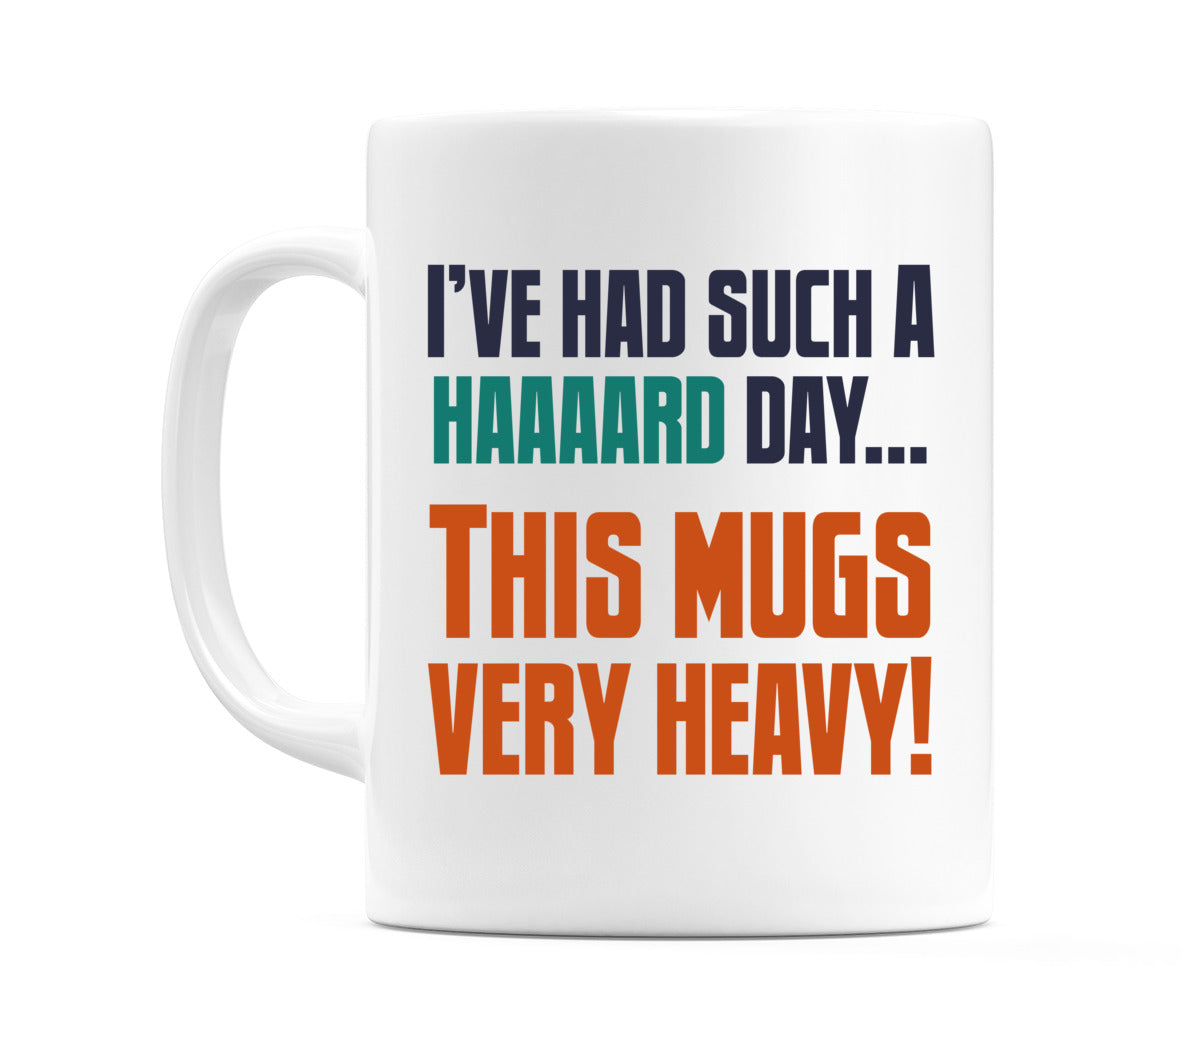 I've Had Such a Haaaard Day... This Mugs Very Heavy! Mug